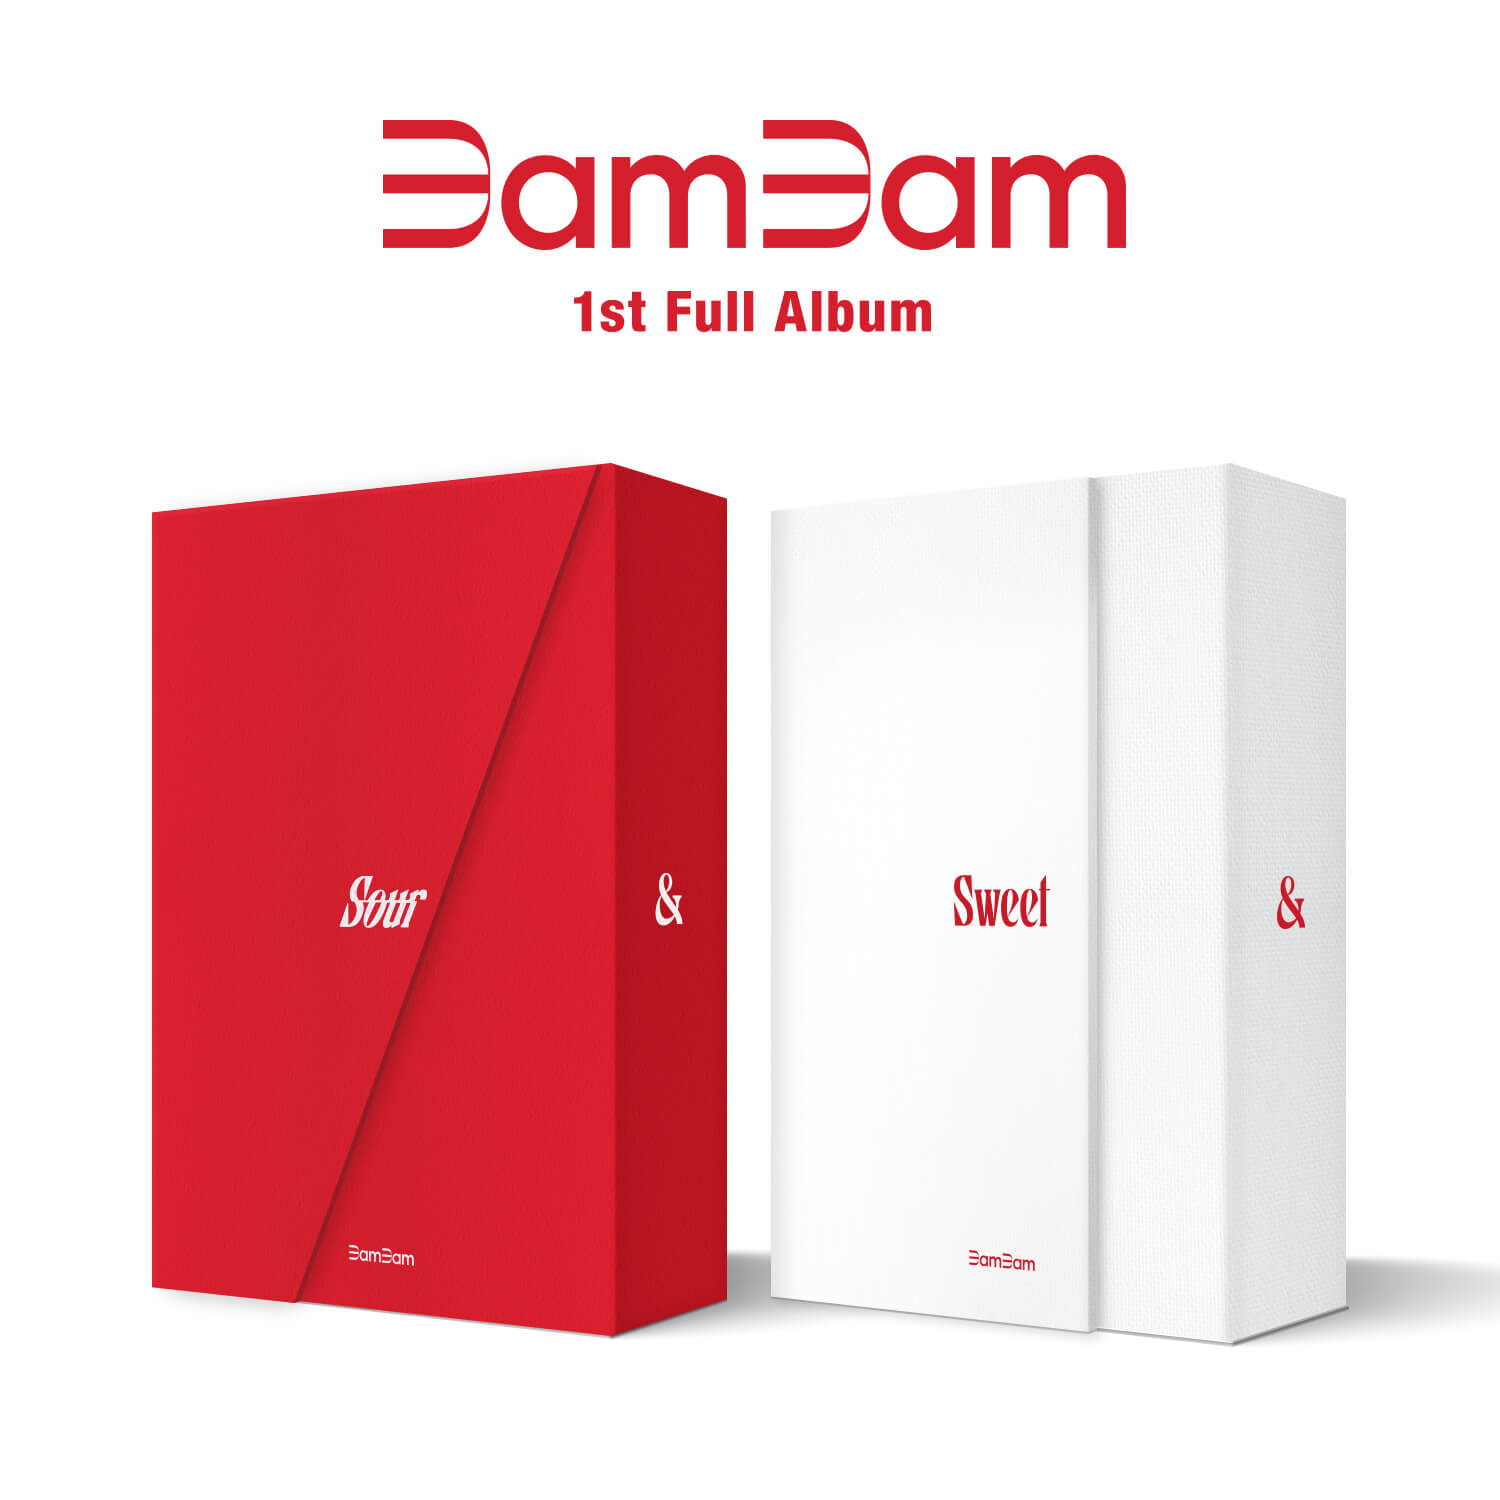 BamBam 1st Full Album Sour & Sweet Sour + Sweet Version